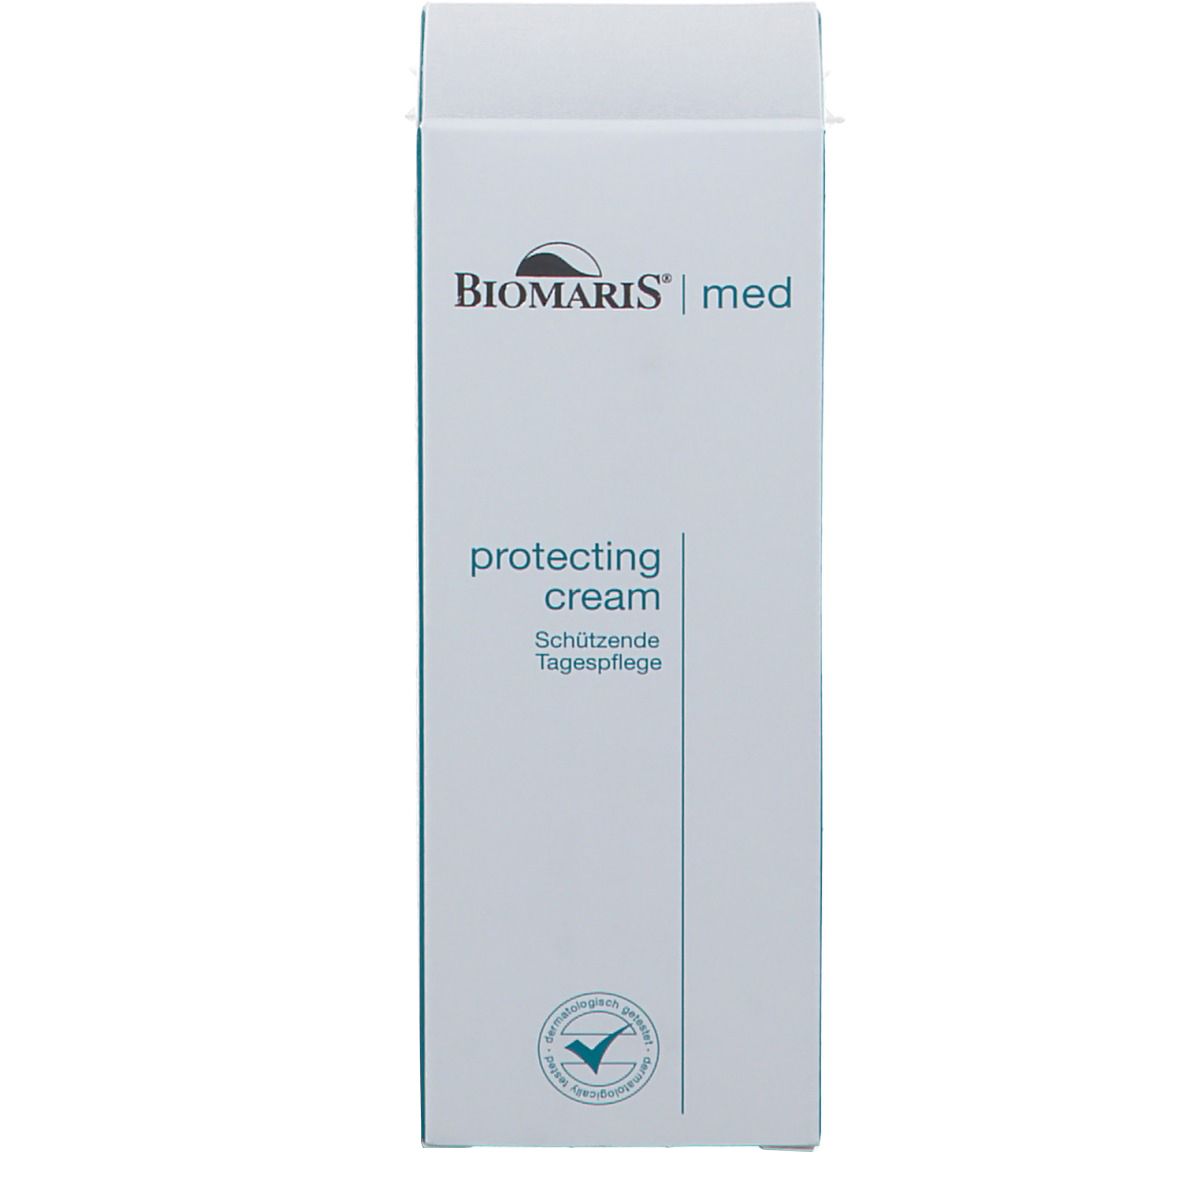 BIOMARIS® protecting cream med